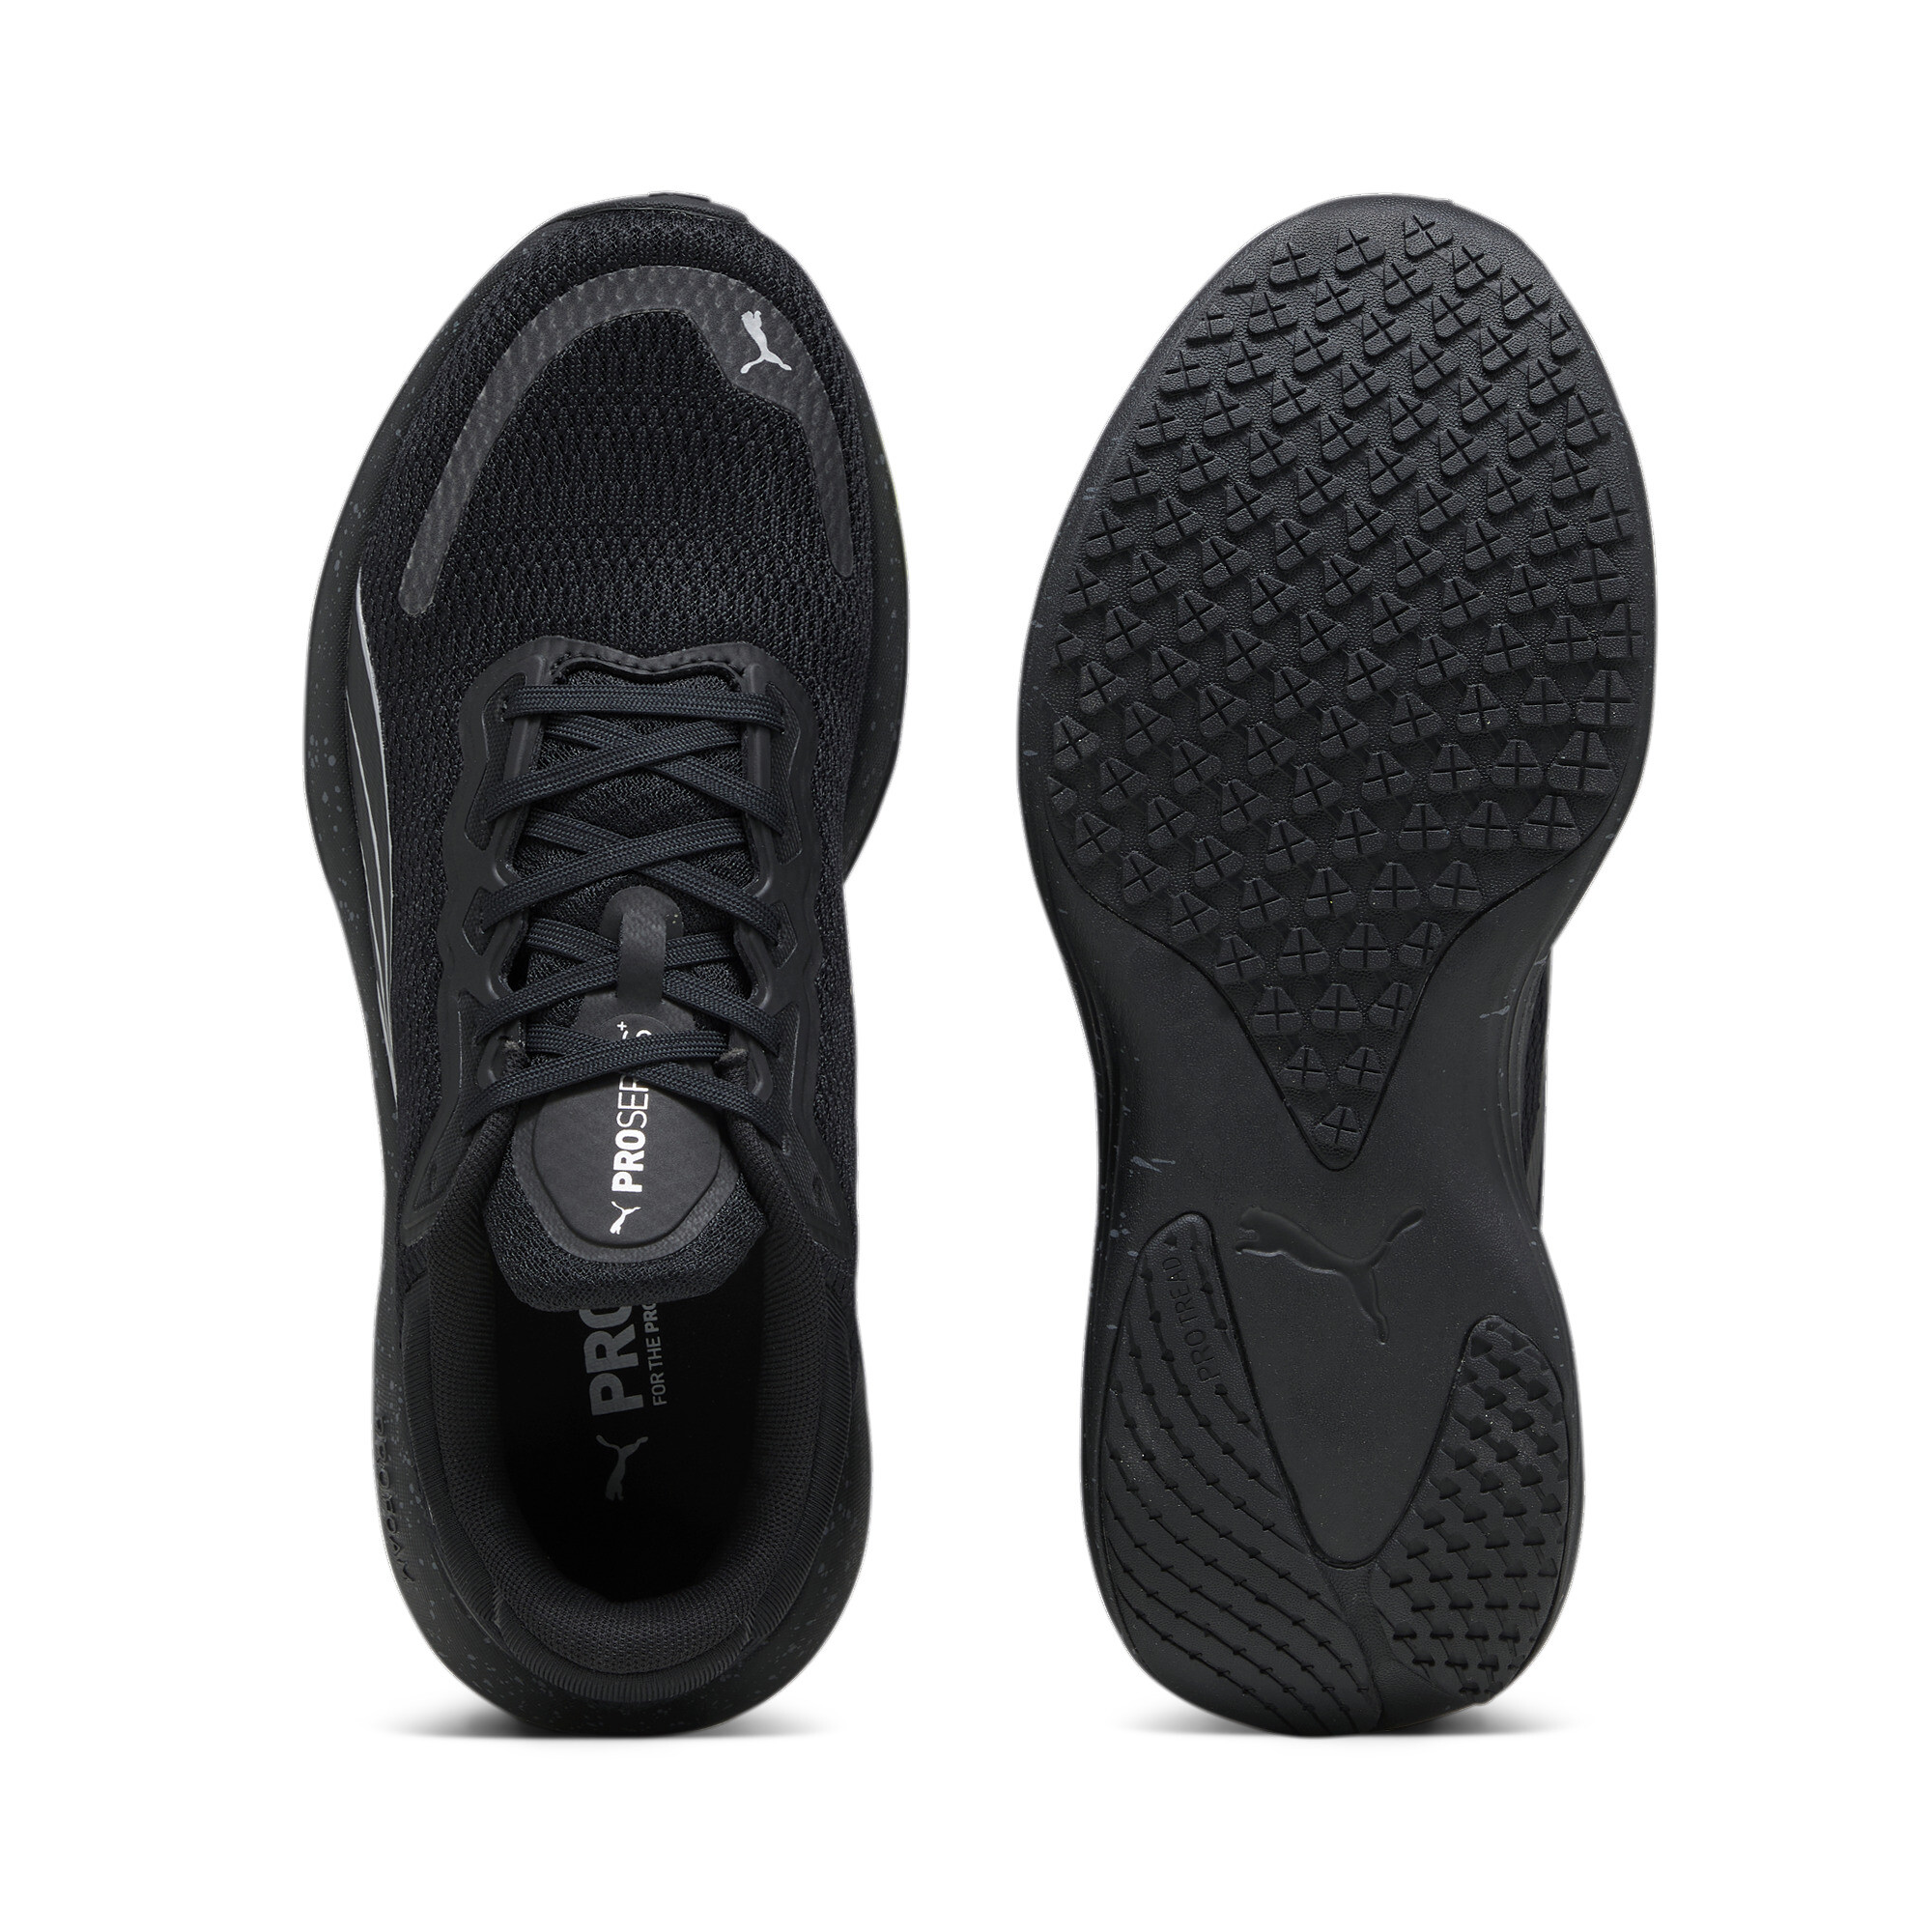 Men's PUMA Scend Pro Running Shoes In Black, Size EU 42